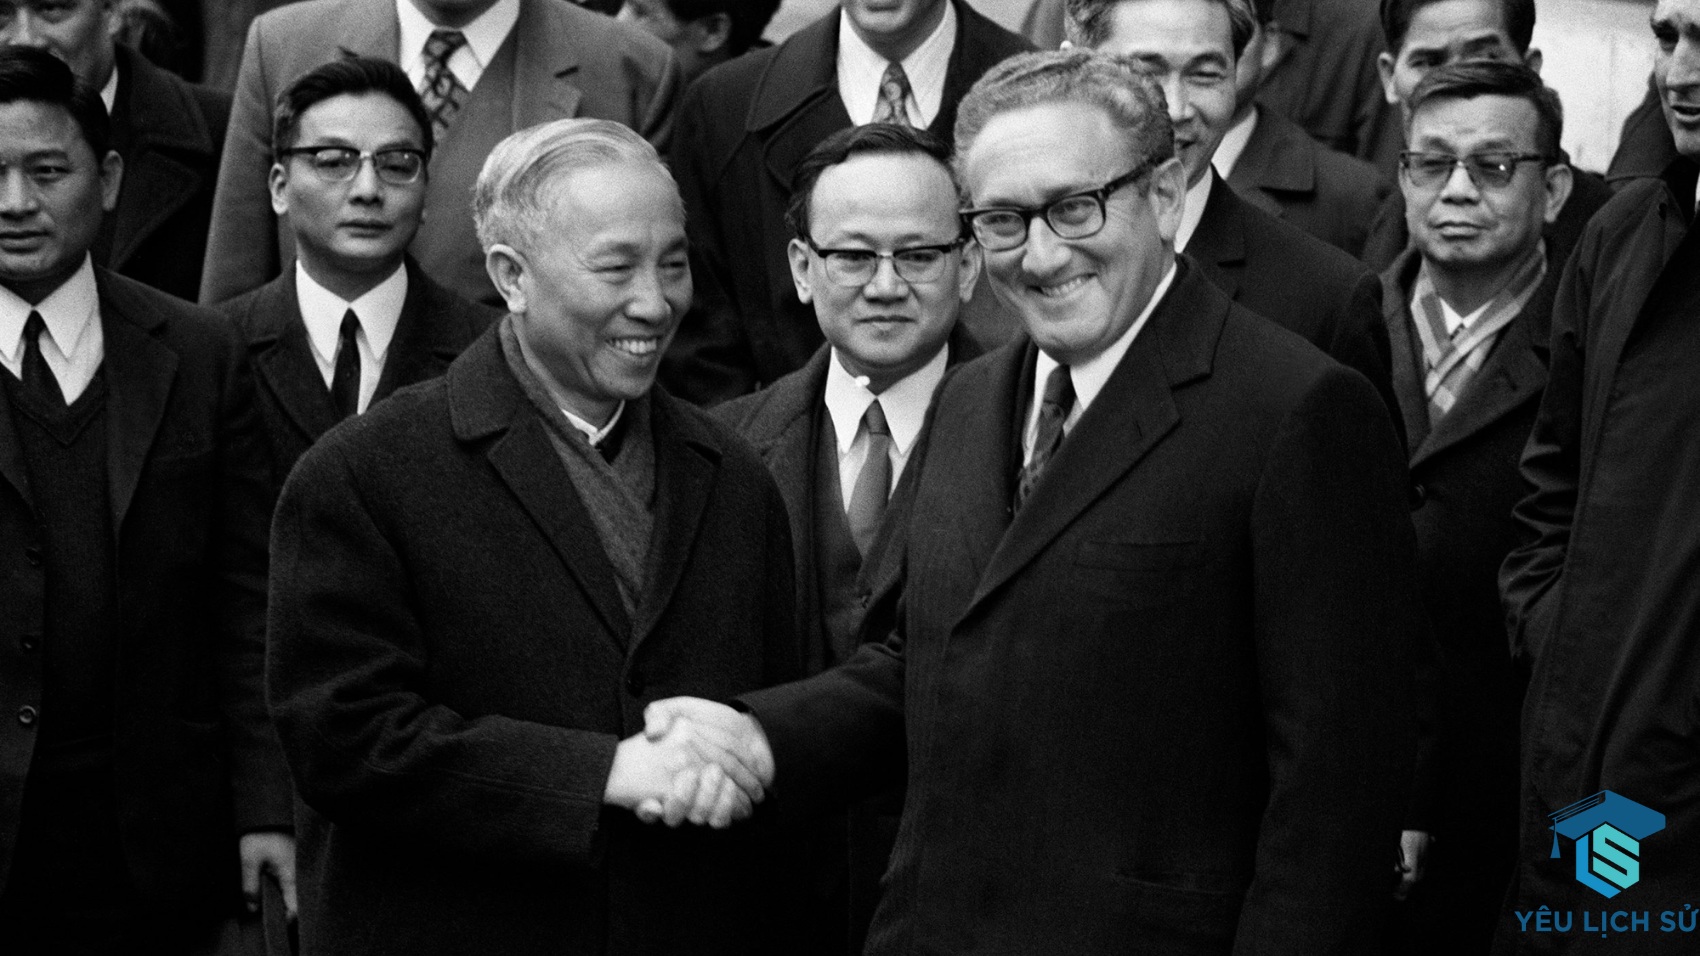 Hiệp định Paris năm 1973 về chấm dứt chiến tranh và lập lại hòa bình ở Việt Nam